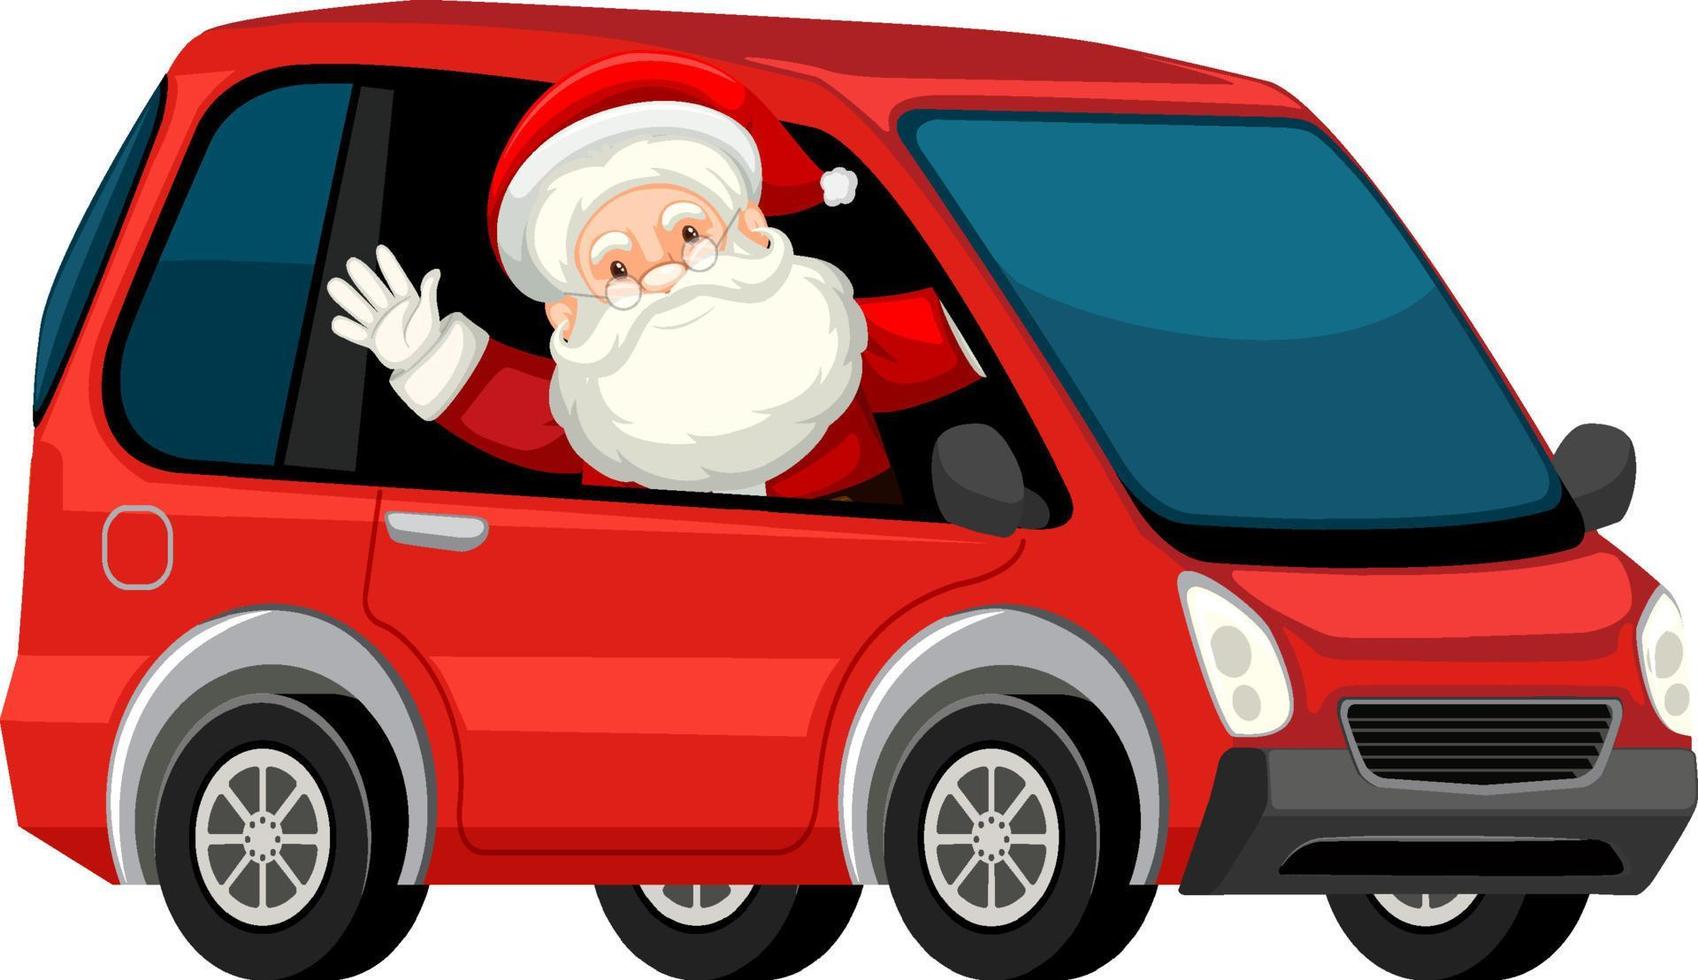 Babbo Natale alla guida di un'auto rossa in stile cartone animato vettore